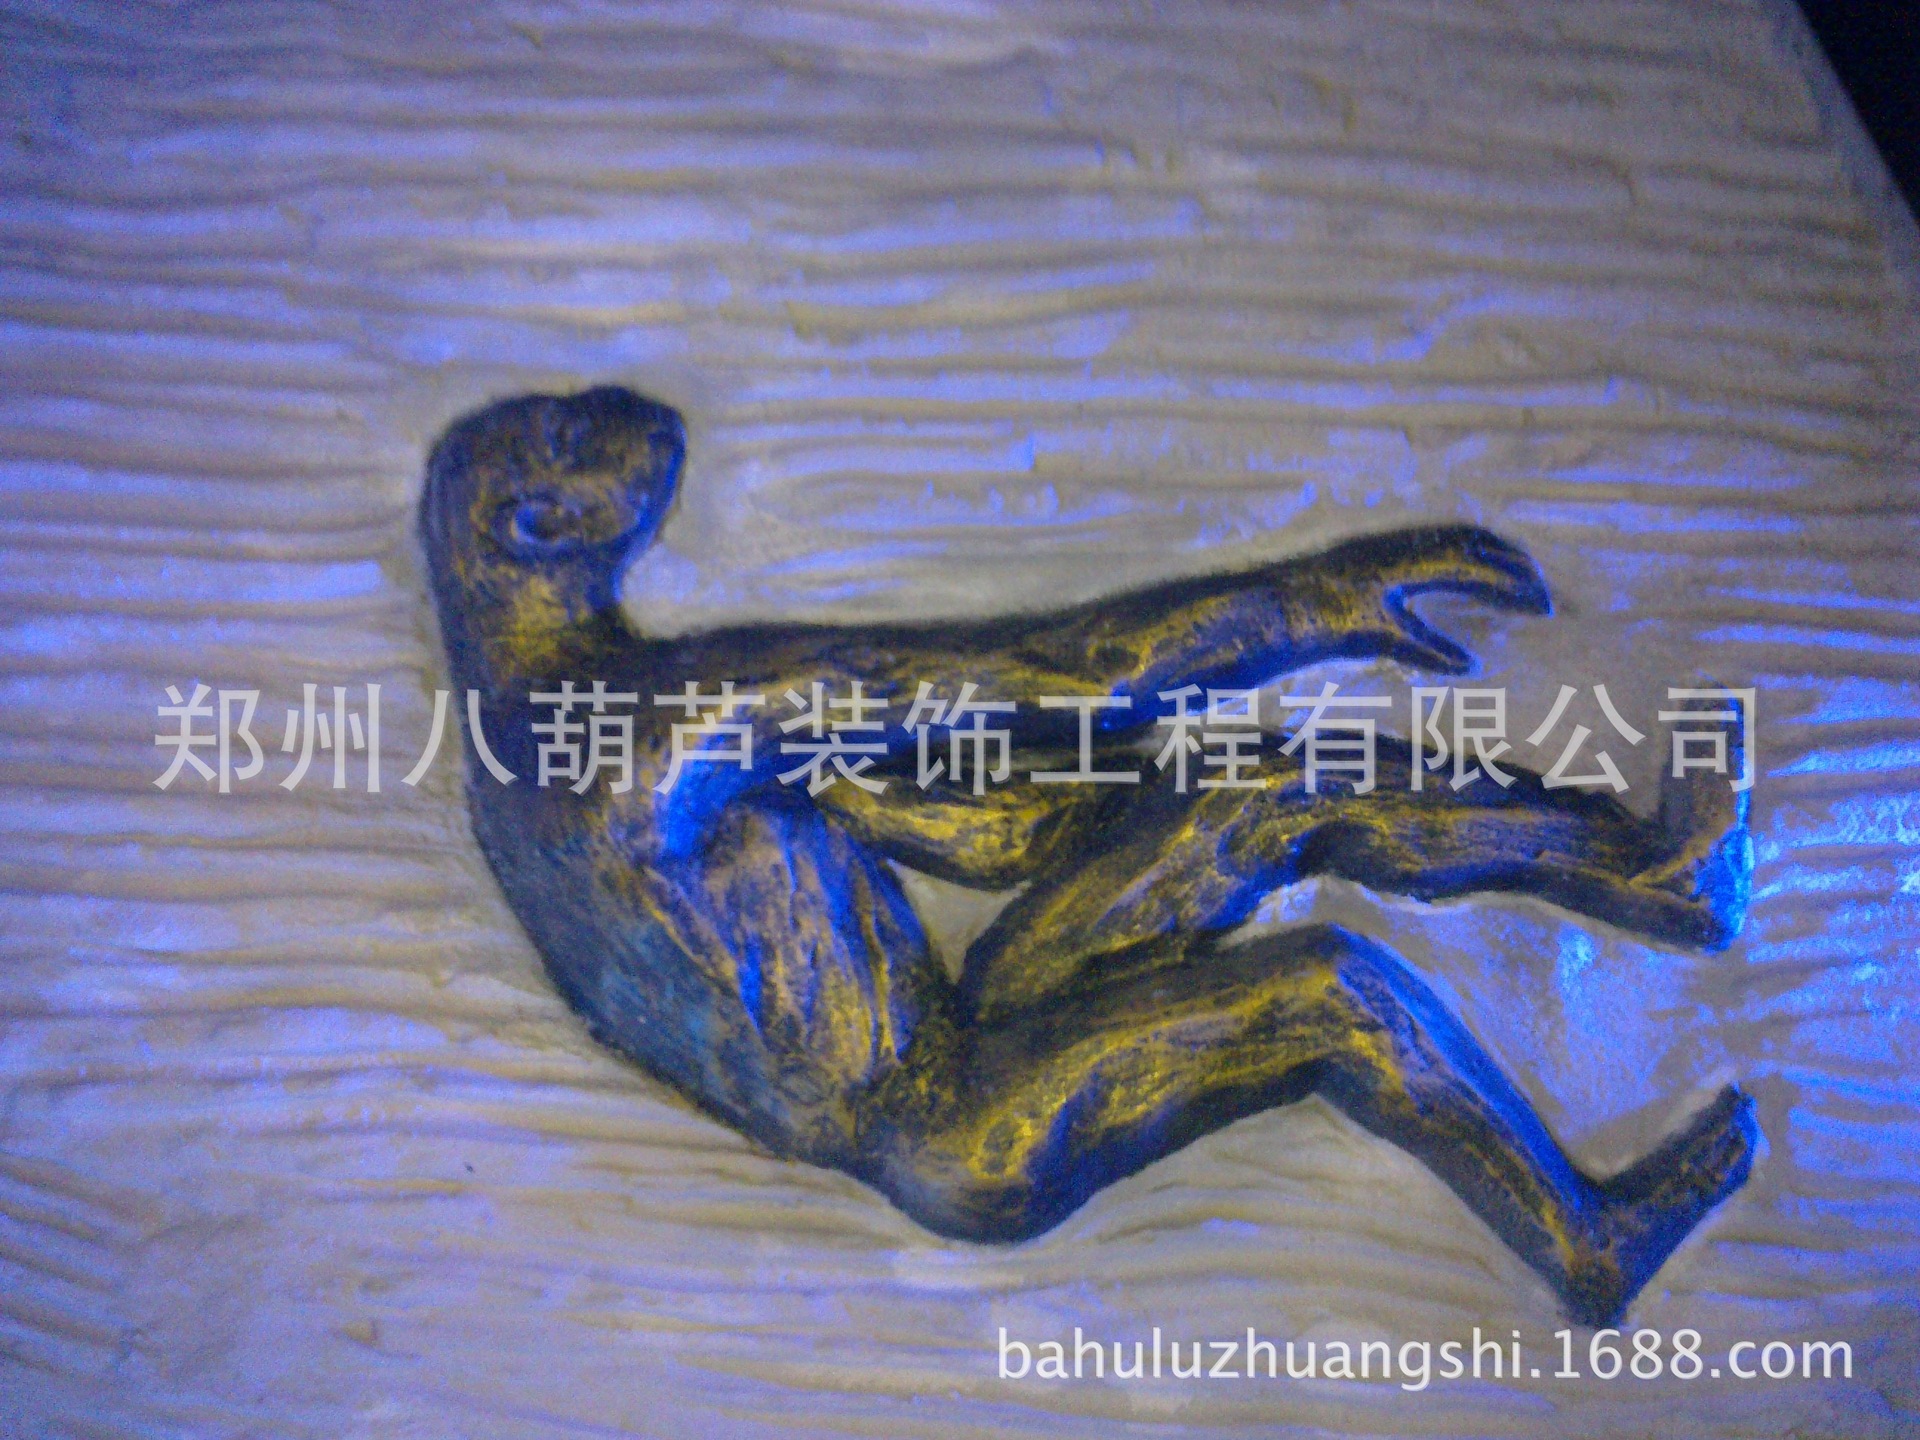 郑州厂家直销玻璃钢浮雕景观雕塑原始人进化艺